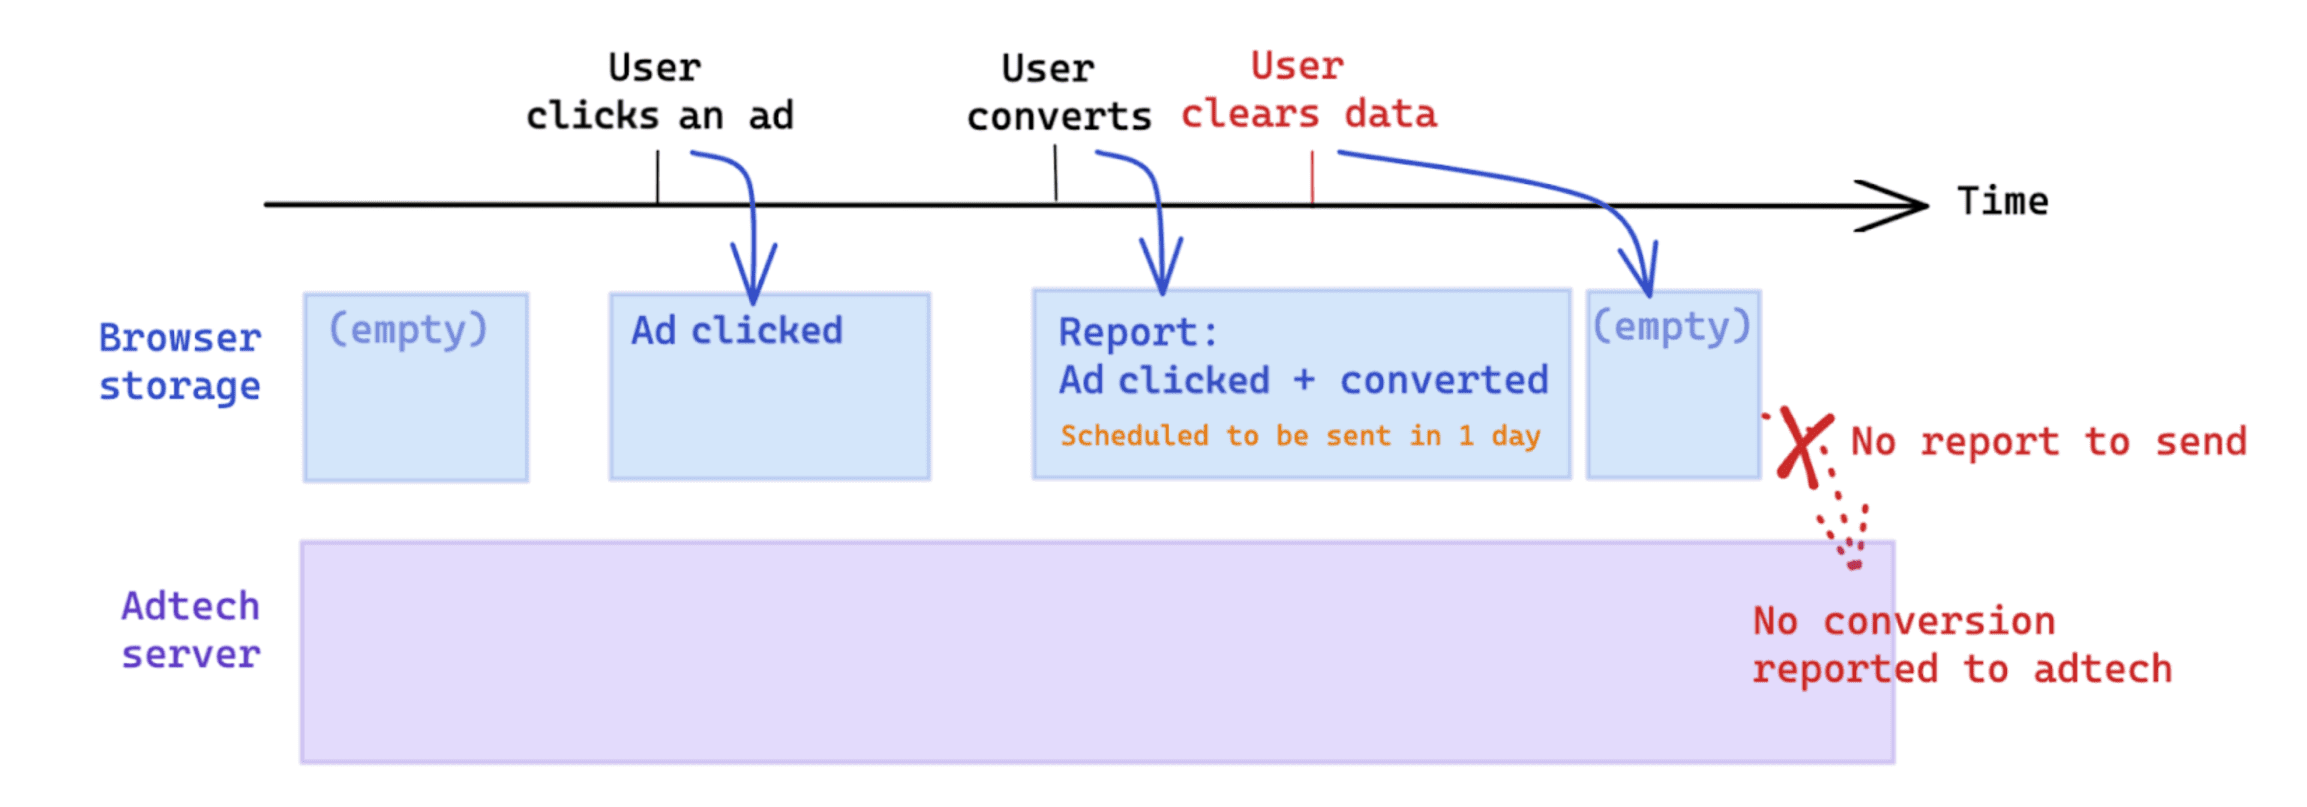 Penghapusan data yang dimulai pengguna setelah konversi memengaruhi pengukuran berdasarkan Attribution Reporting API.